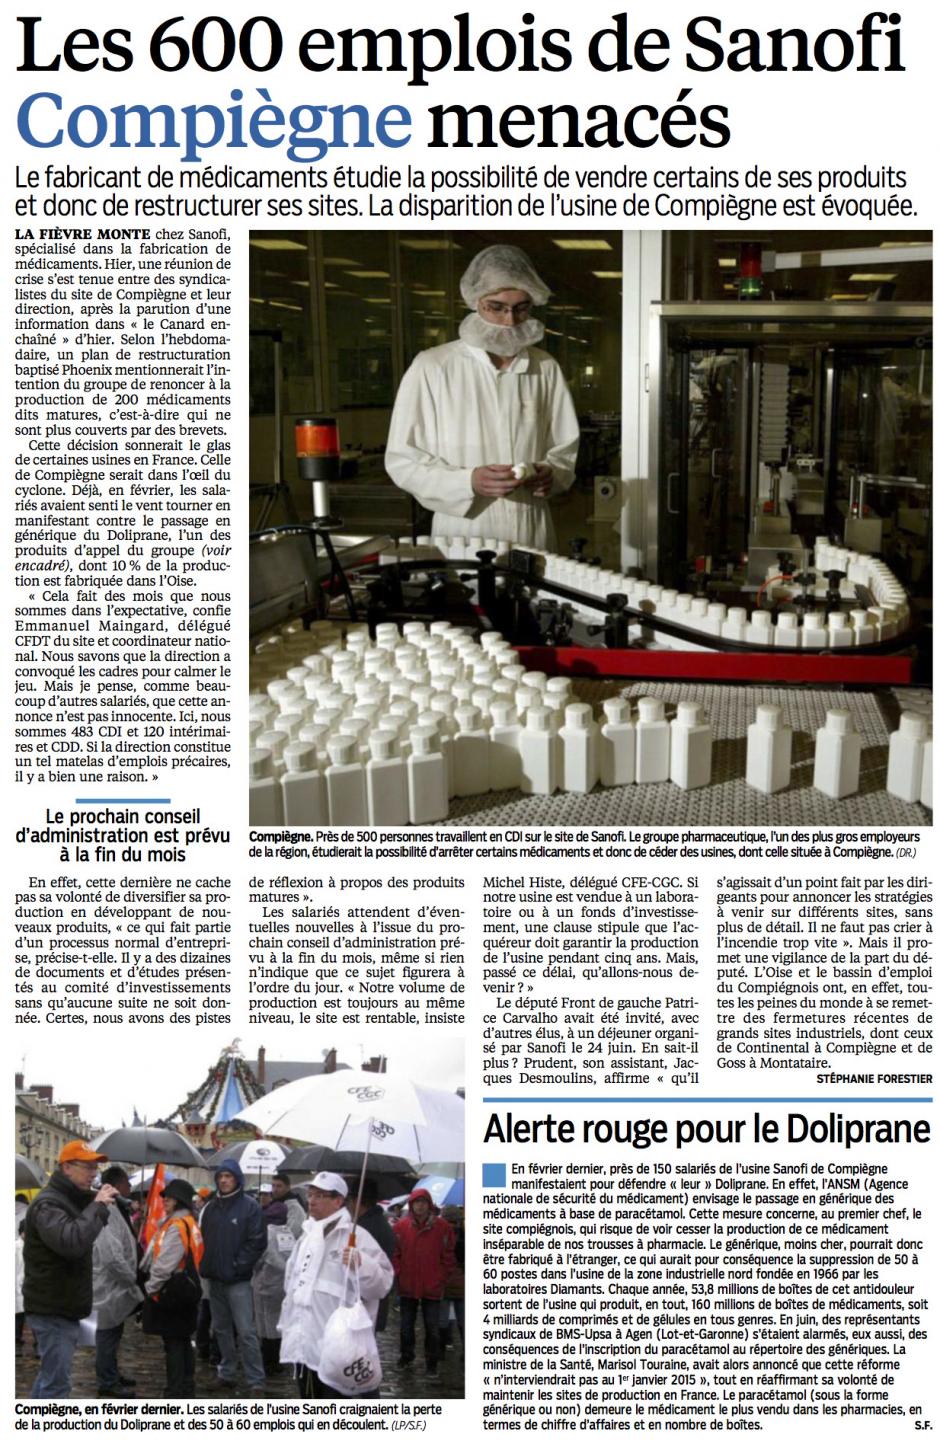 20140710-LeP-Compiègne-Les 600 emplois de Sanofi menacés